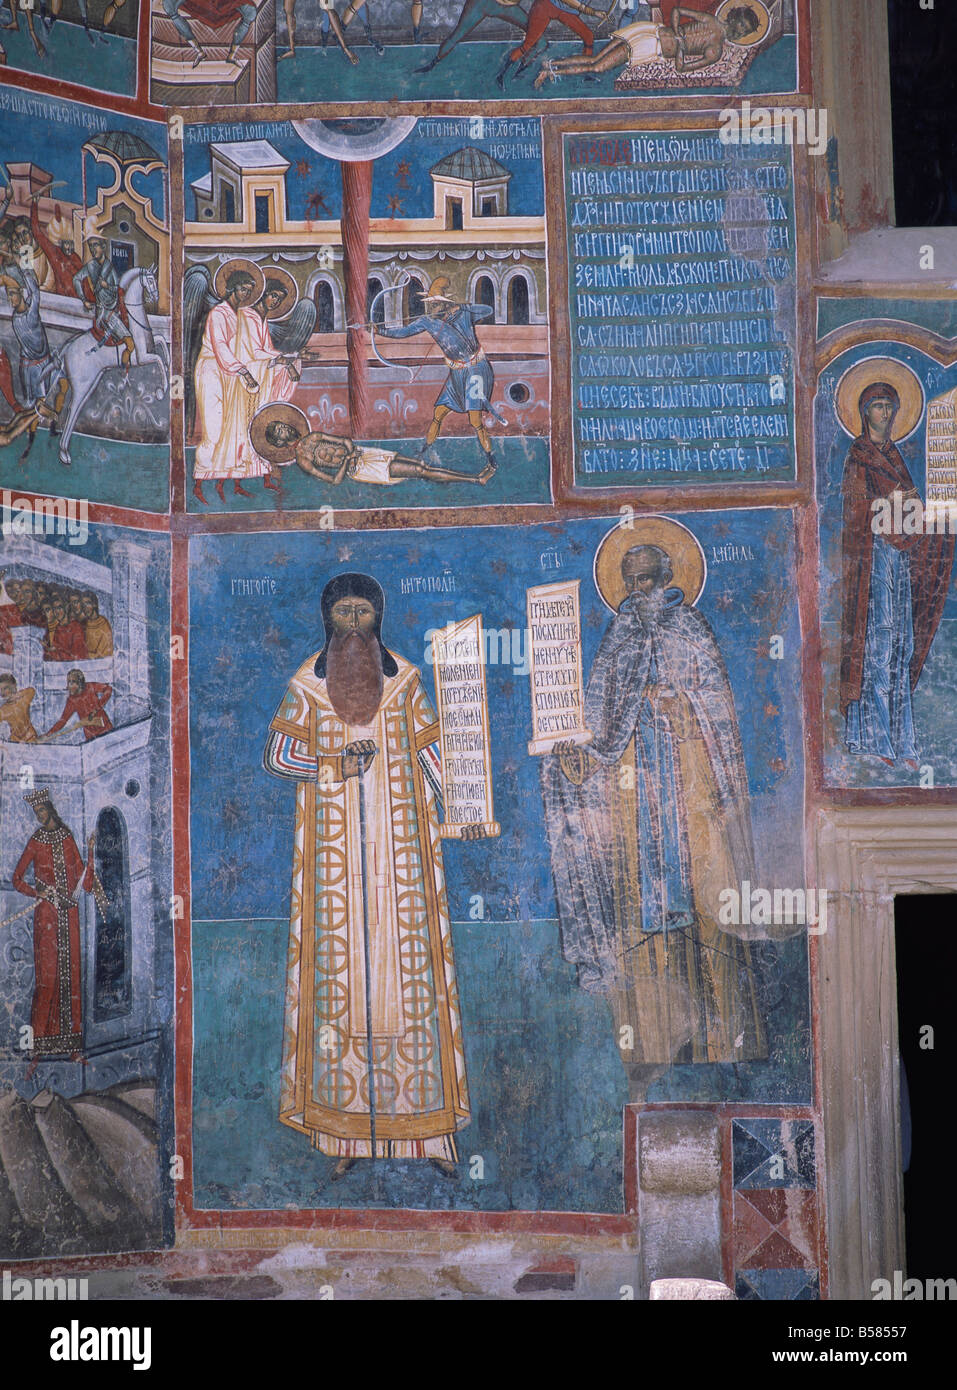 Des panneaux au début de saints et des prophètes, Voronet, Nord Ouest de la Moldavie, Roumanie Banque D'Images